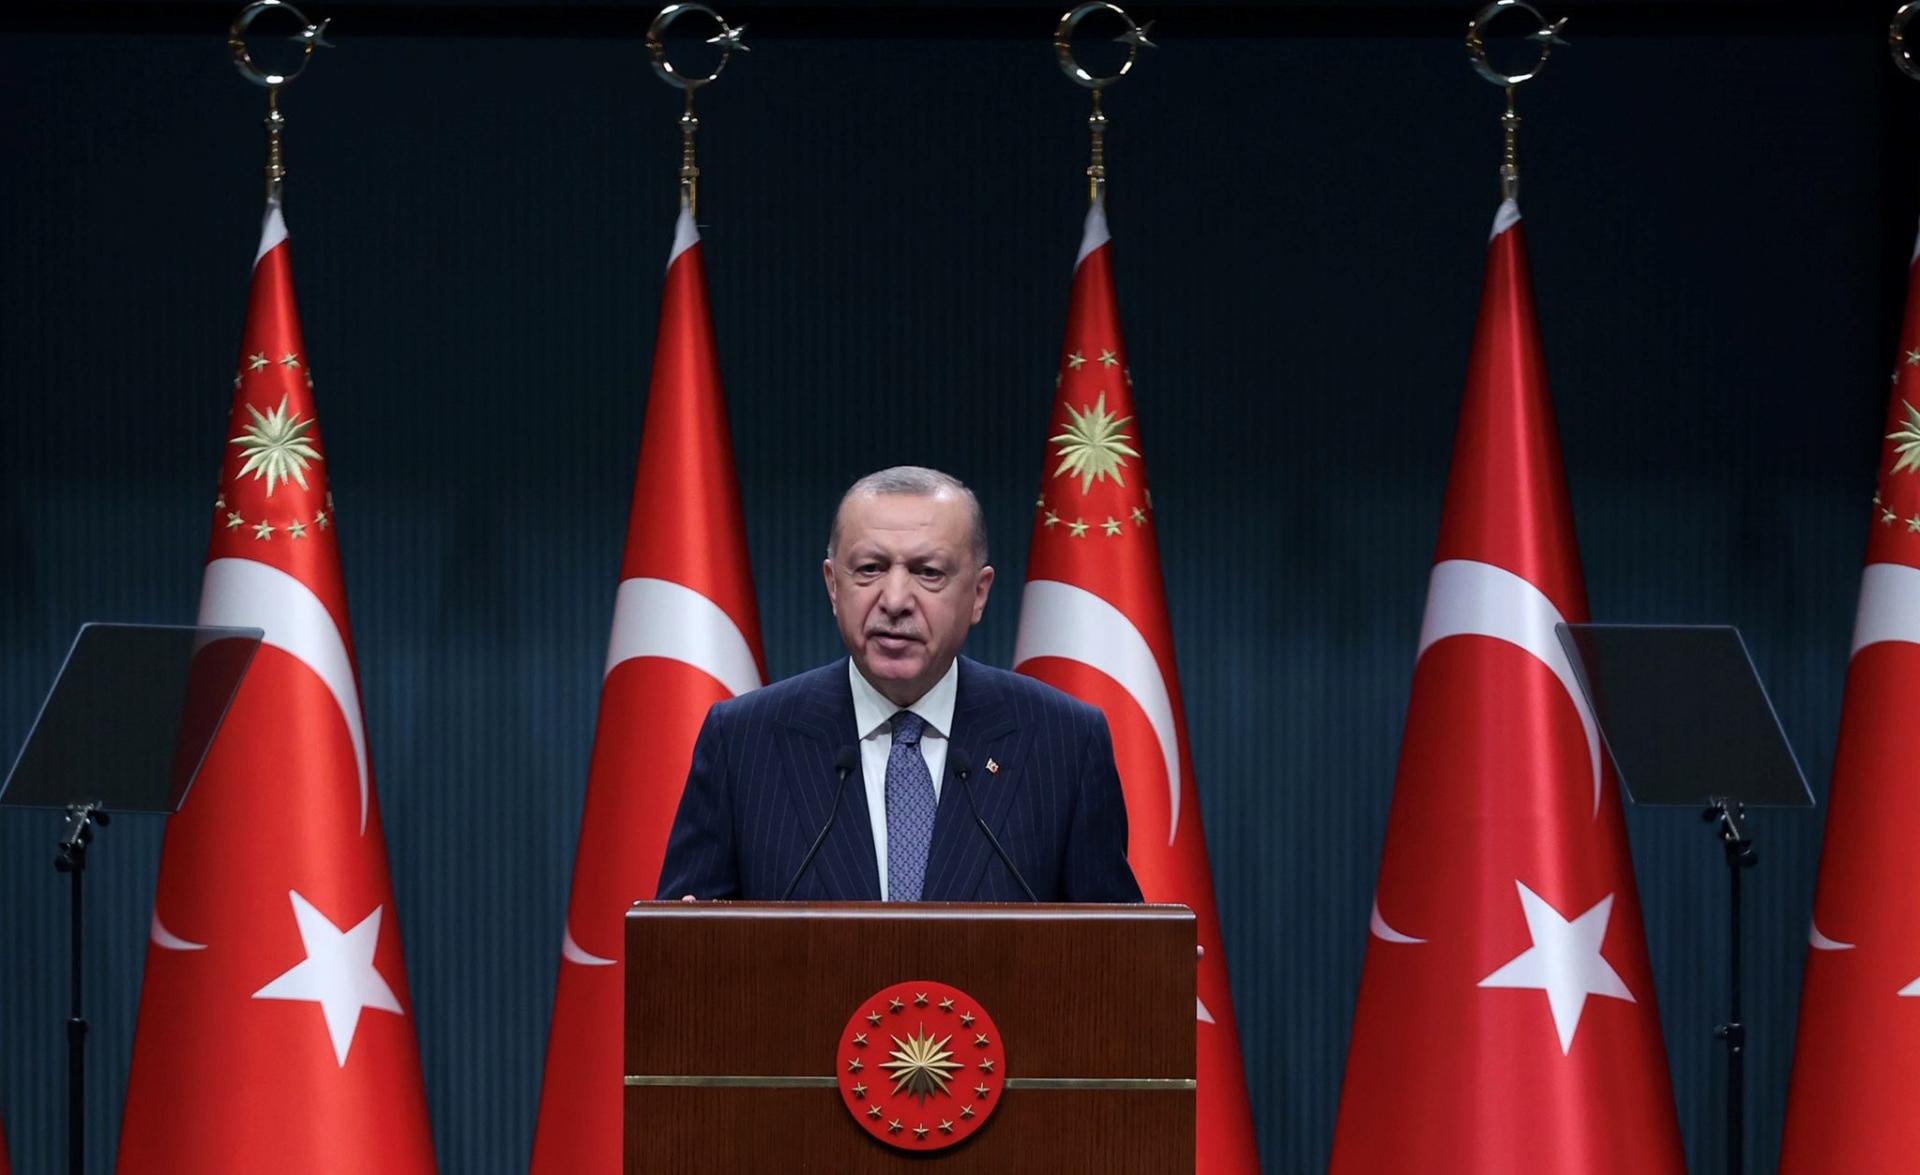 Erdogan: "Faremo sforzi per garantire che lo Stato turco-cipriota abbia un ampio riconoscimento"